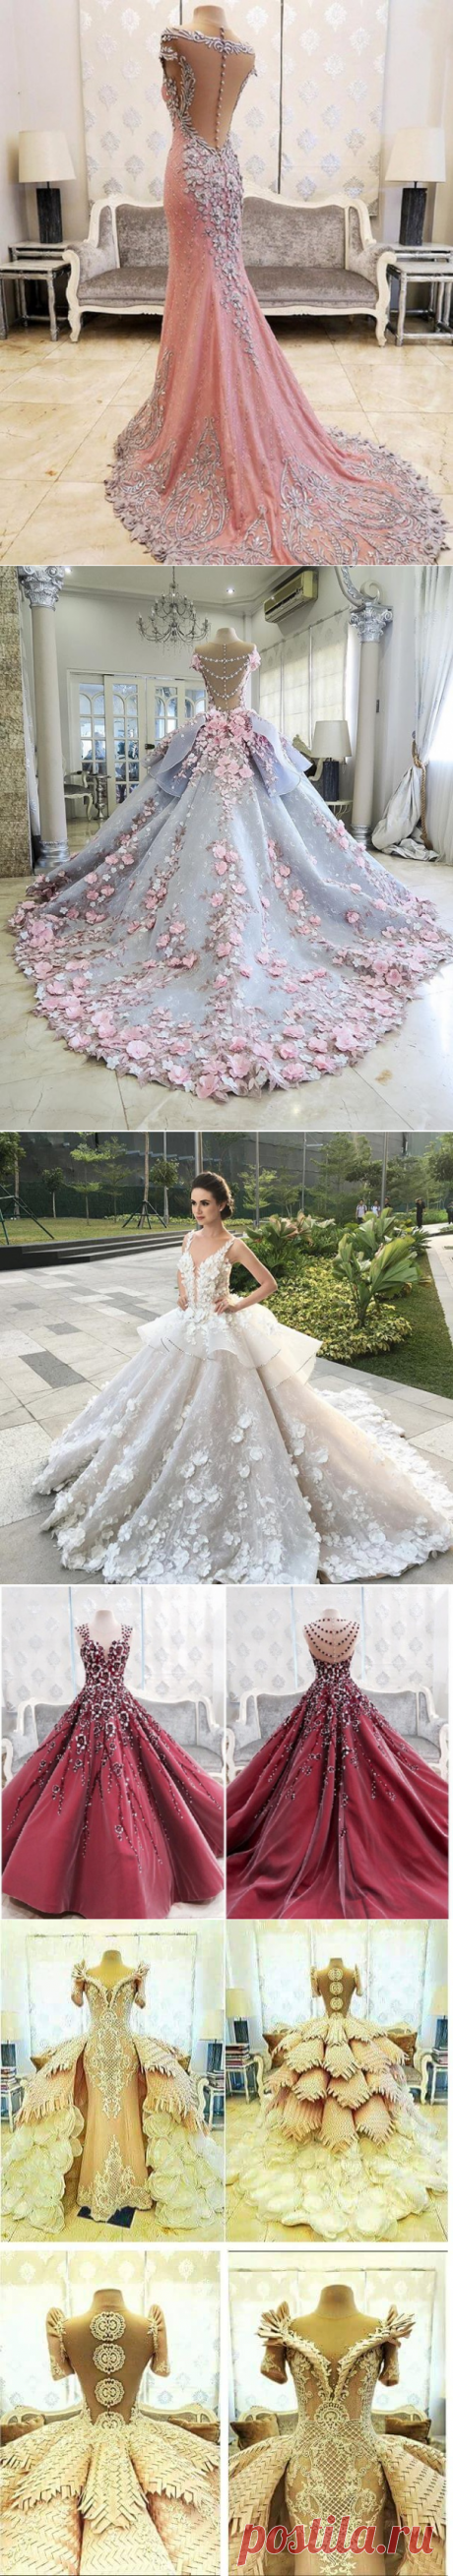 (+1) Невероятные платья филиппинского дизайнера Mak Tumang